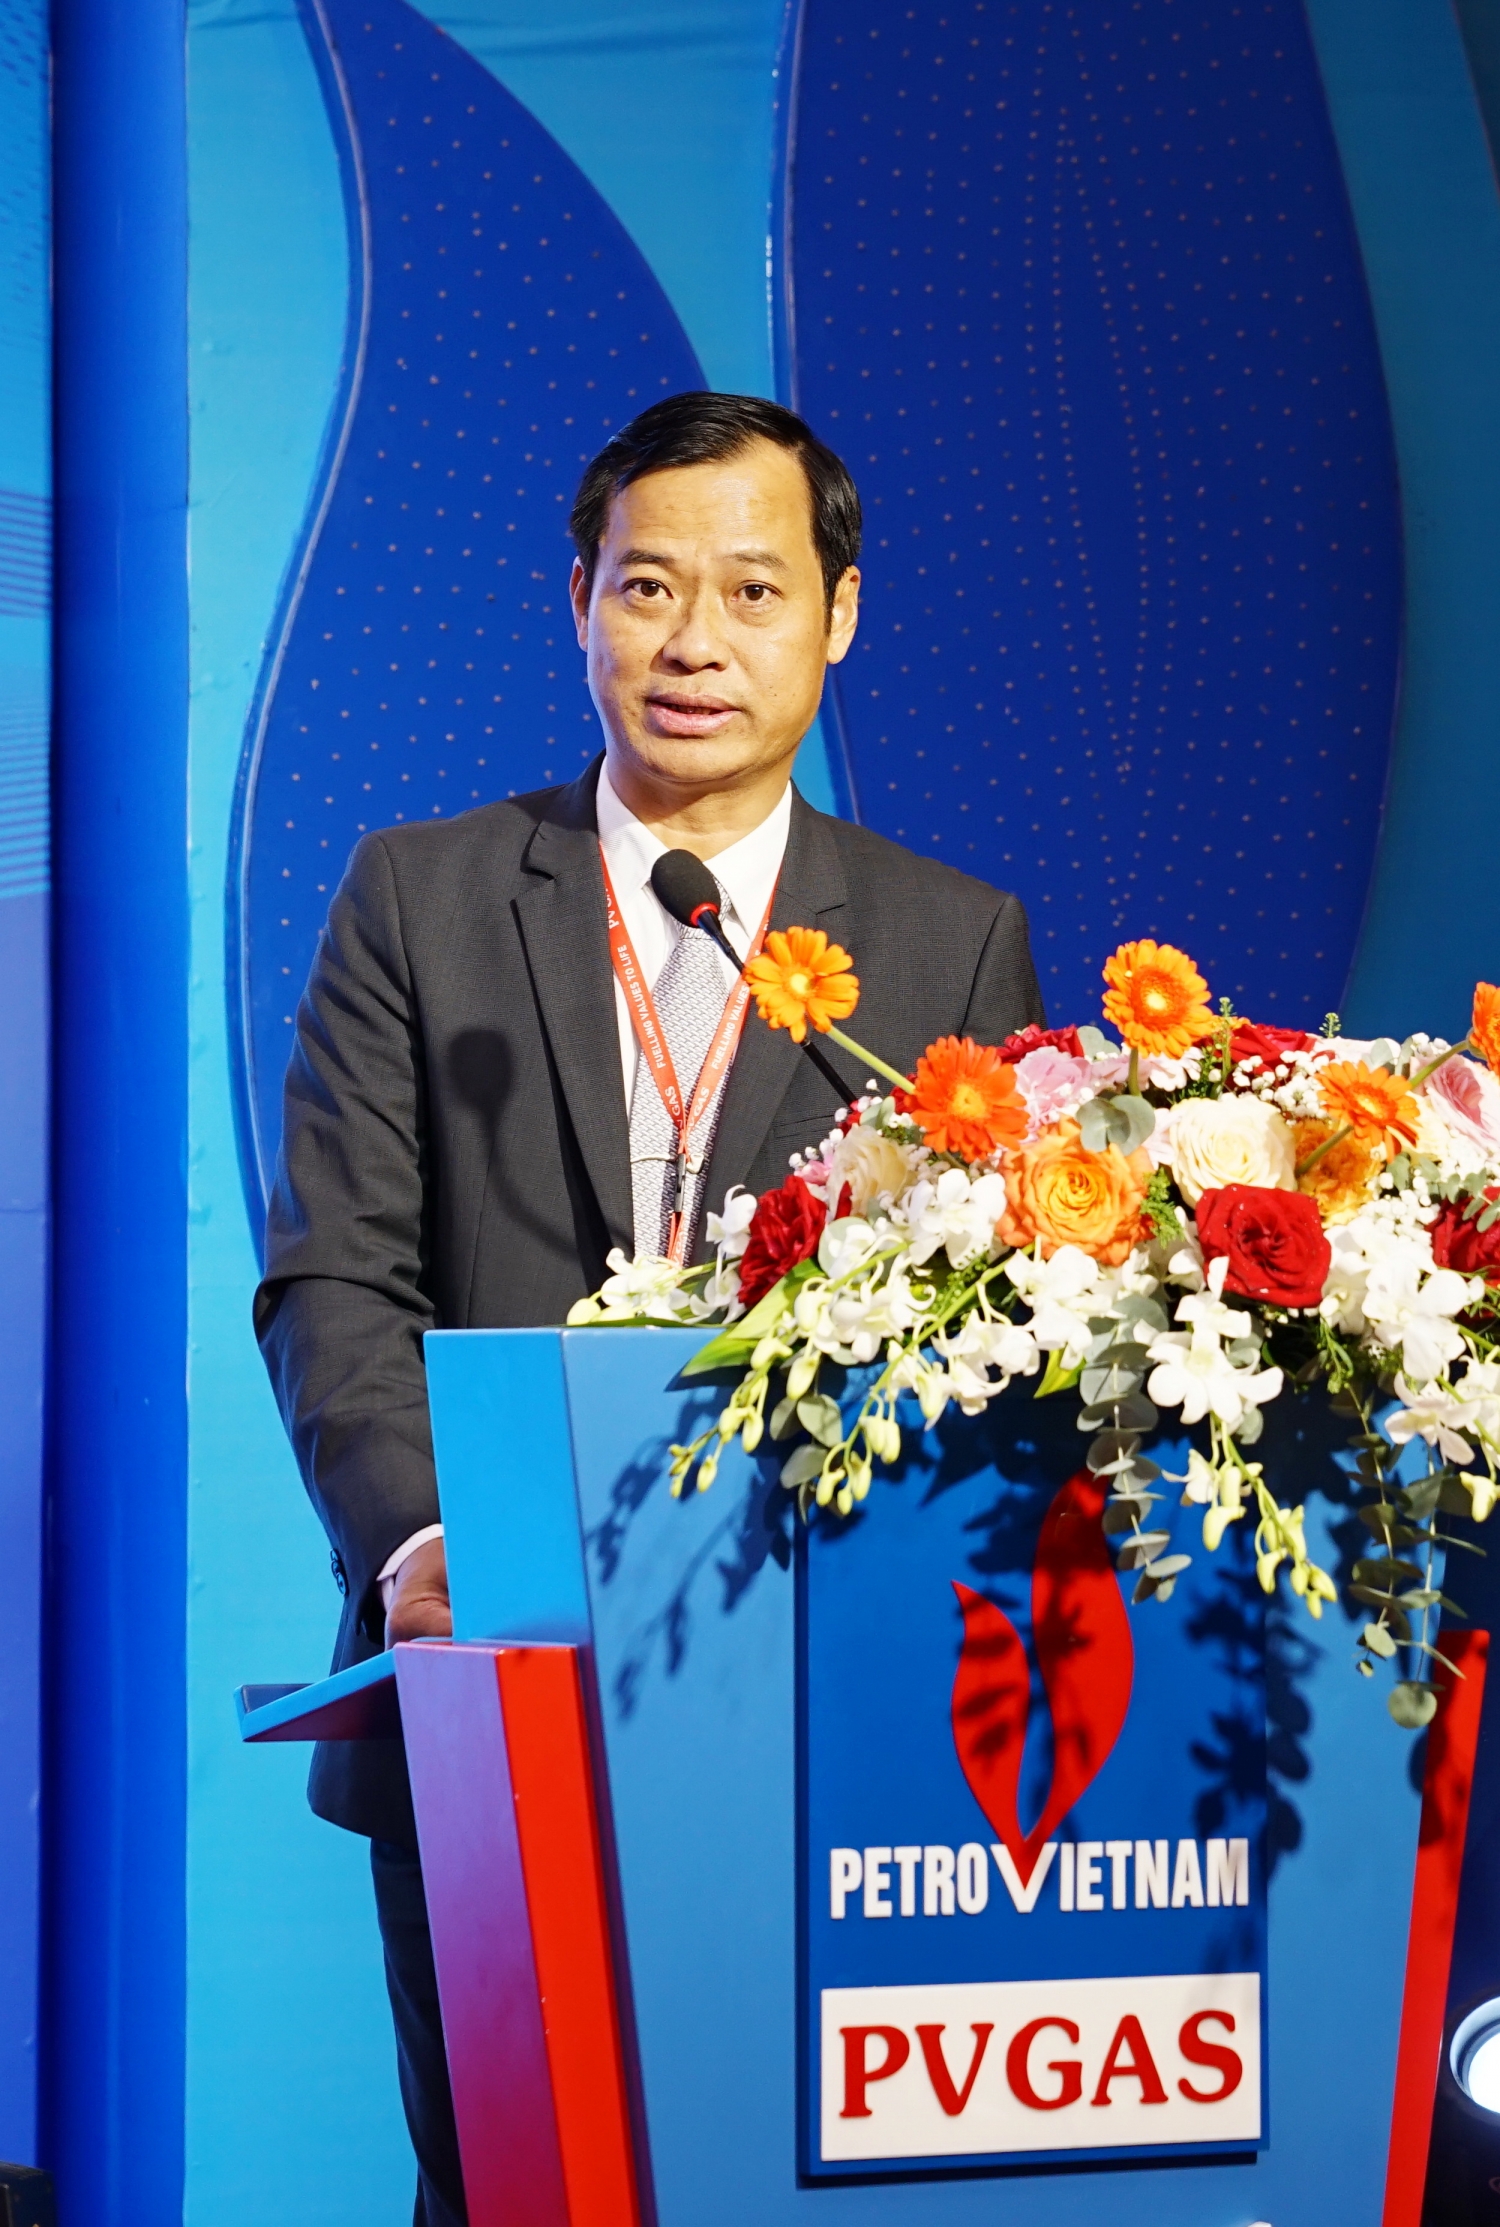 Chủ tịch Công đoàn PV GAS Trần Xuân Thành báo cáo về Thỏa ước lao động tập thể, Nội quy lao động, Quy chế dân chủ và Quỹ Khen thưởng - Phúc lợi